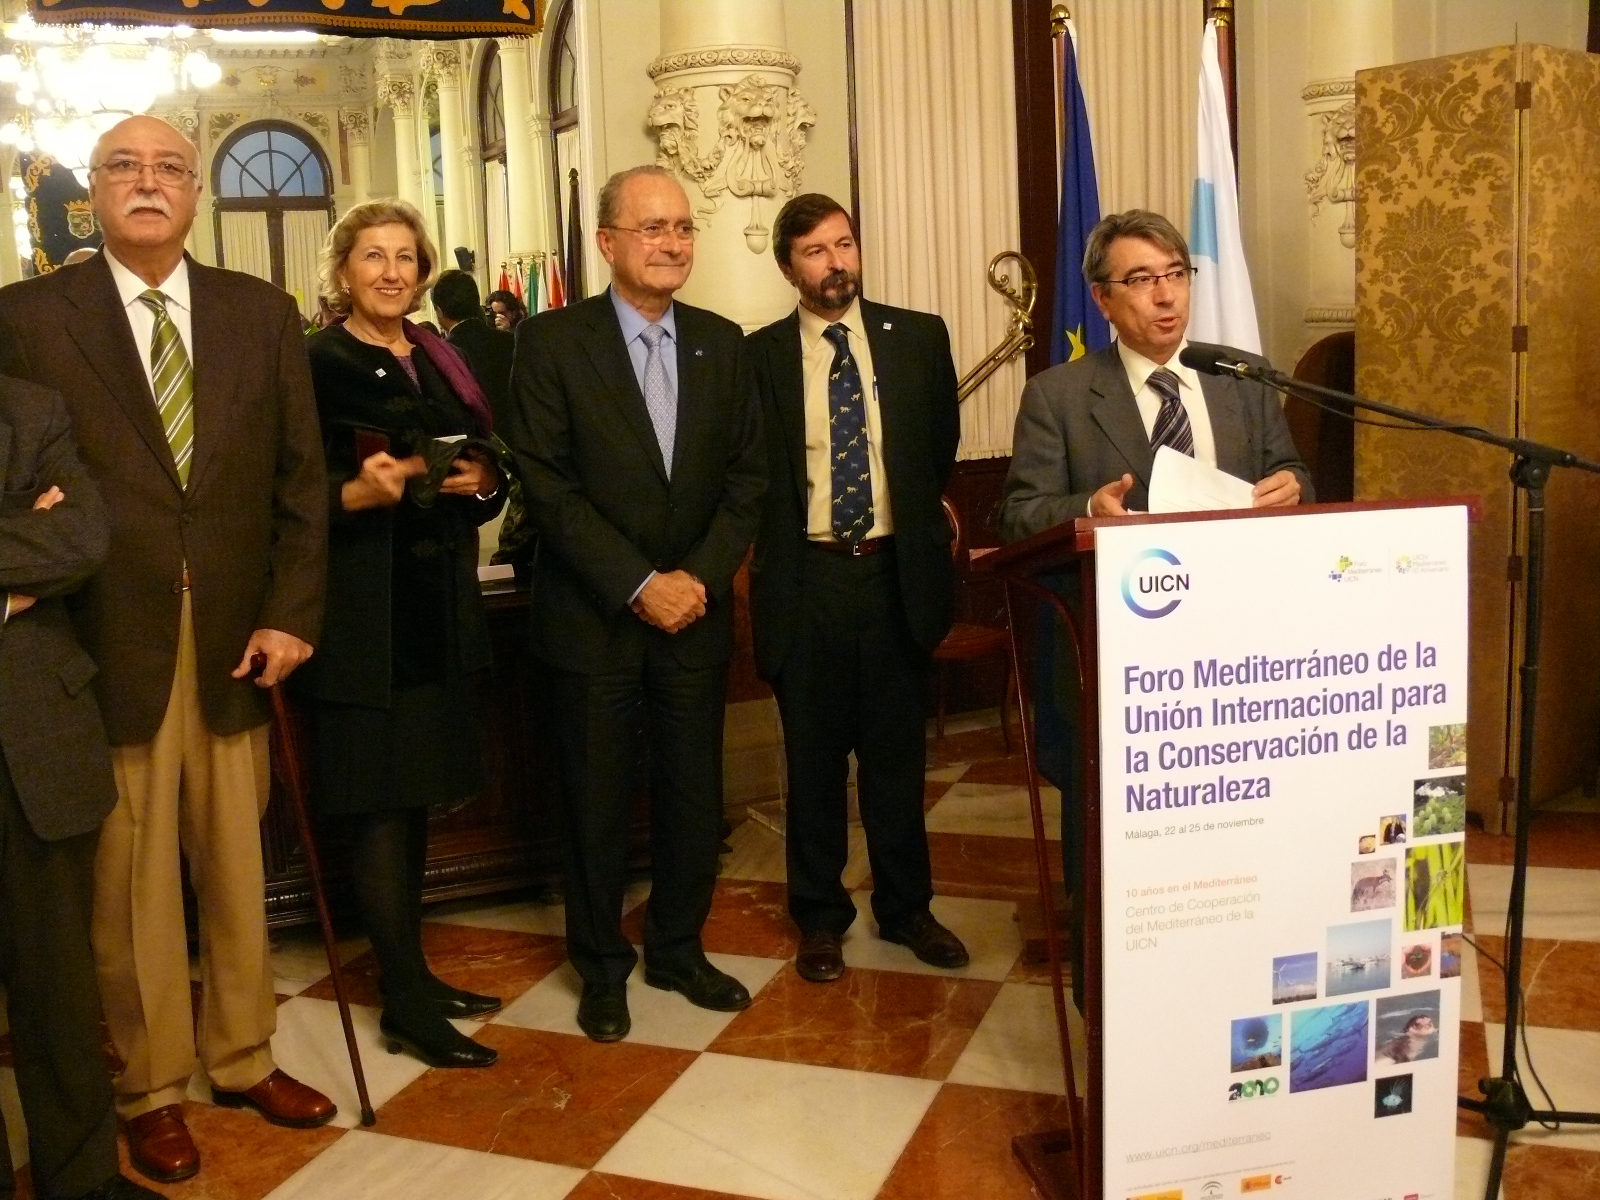 Celebracion del decimo aniversario del Centro de Cooperación del Mediterraneo en el Ayuntamiento de Malaga